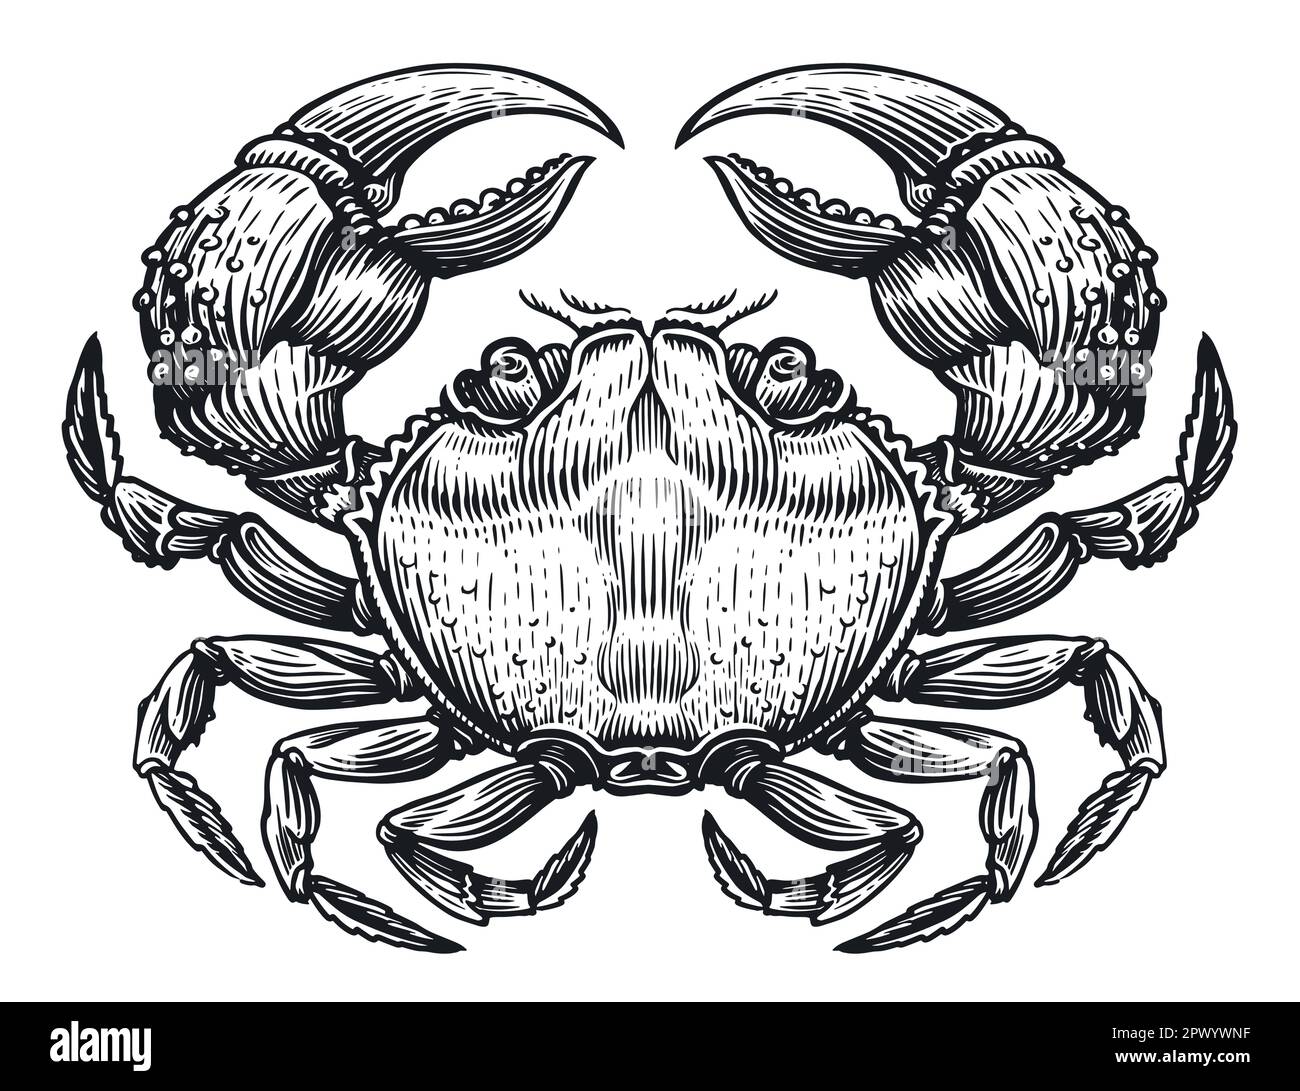 Krabben im Vintage-Stil mit Skizzengravierung für Menü- oder Etikettendesign. Meeresfrüchte, handgezeichnete Vektordarstellung Stock Vektor